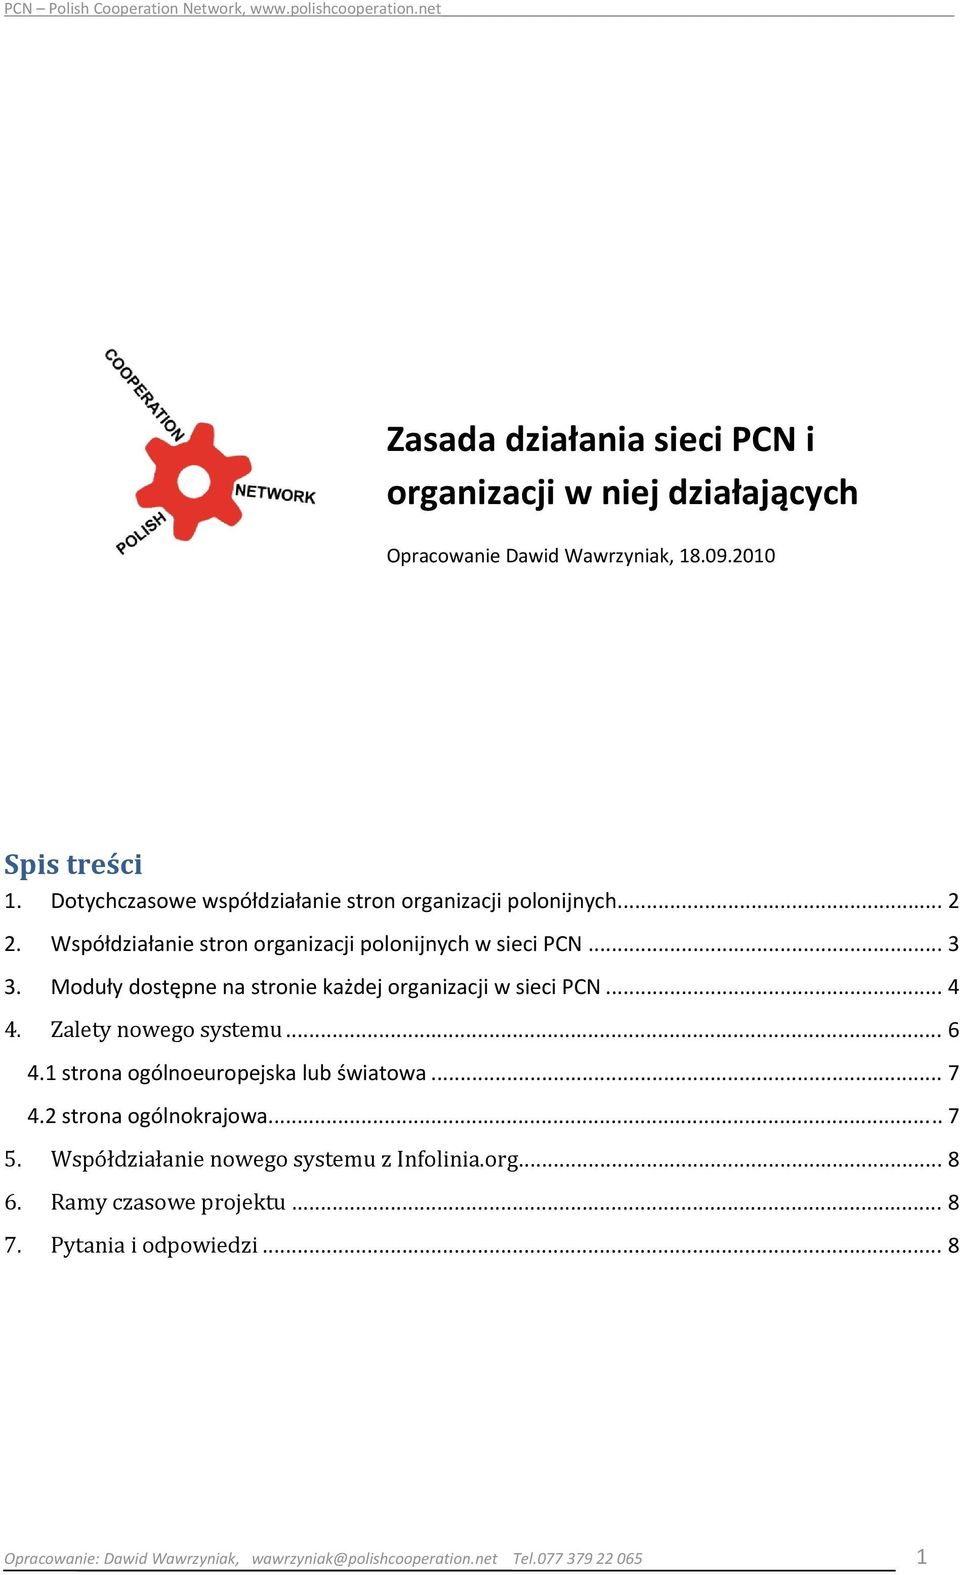 Moduły dostępne na stronie każdej organizacji w sieci PCN... 4 4. Zalety nowego systemu... 6 4.1 strona ogólnoeuropejska lub światowa... 7 4.